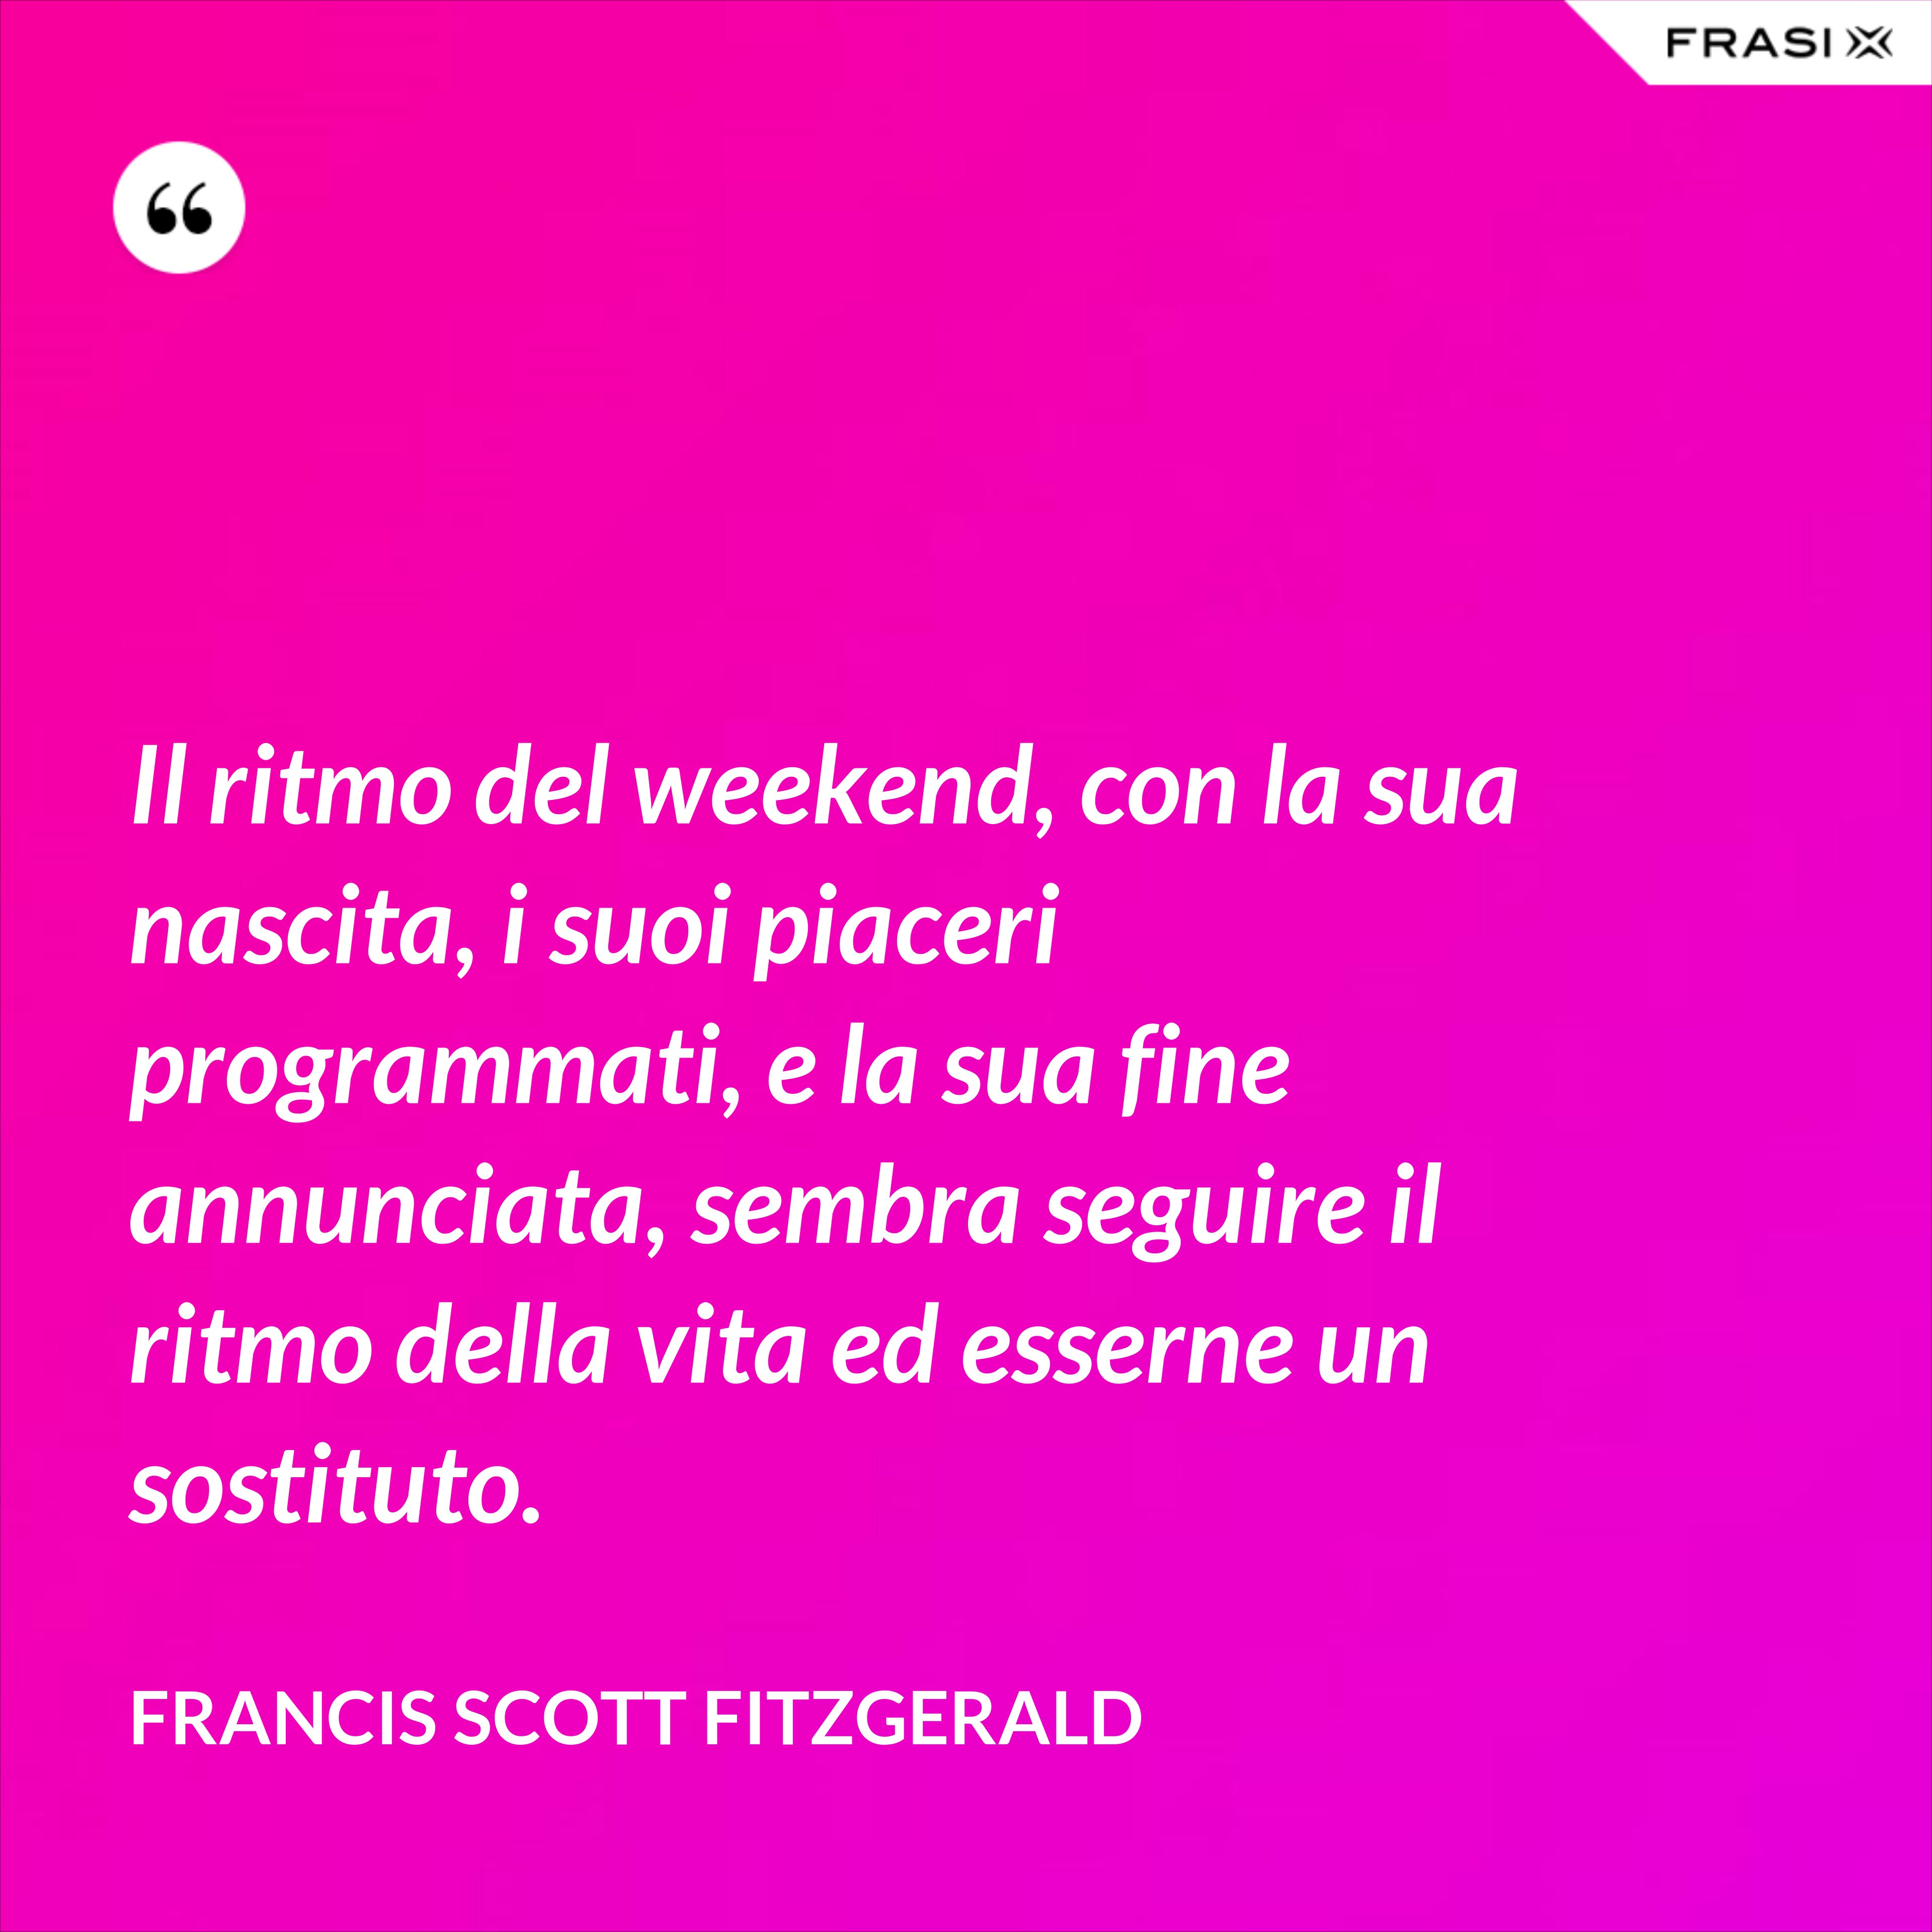 Il ritmo del weekend, con la sua nascita, i suoi piaceri programmati, e la sua fine annunciata, sembra seguire il ritmo della vita ed esserne un sostituto. - Francis Scott Fitzgerald